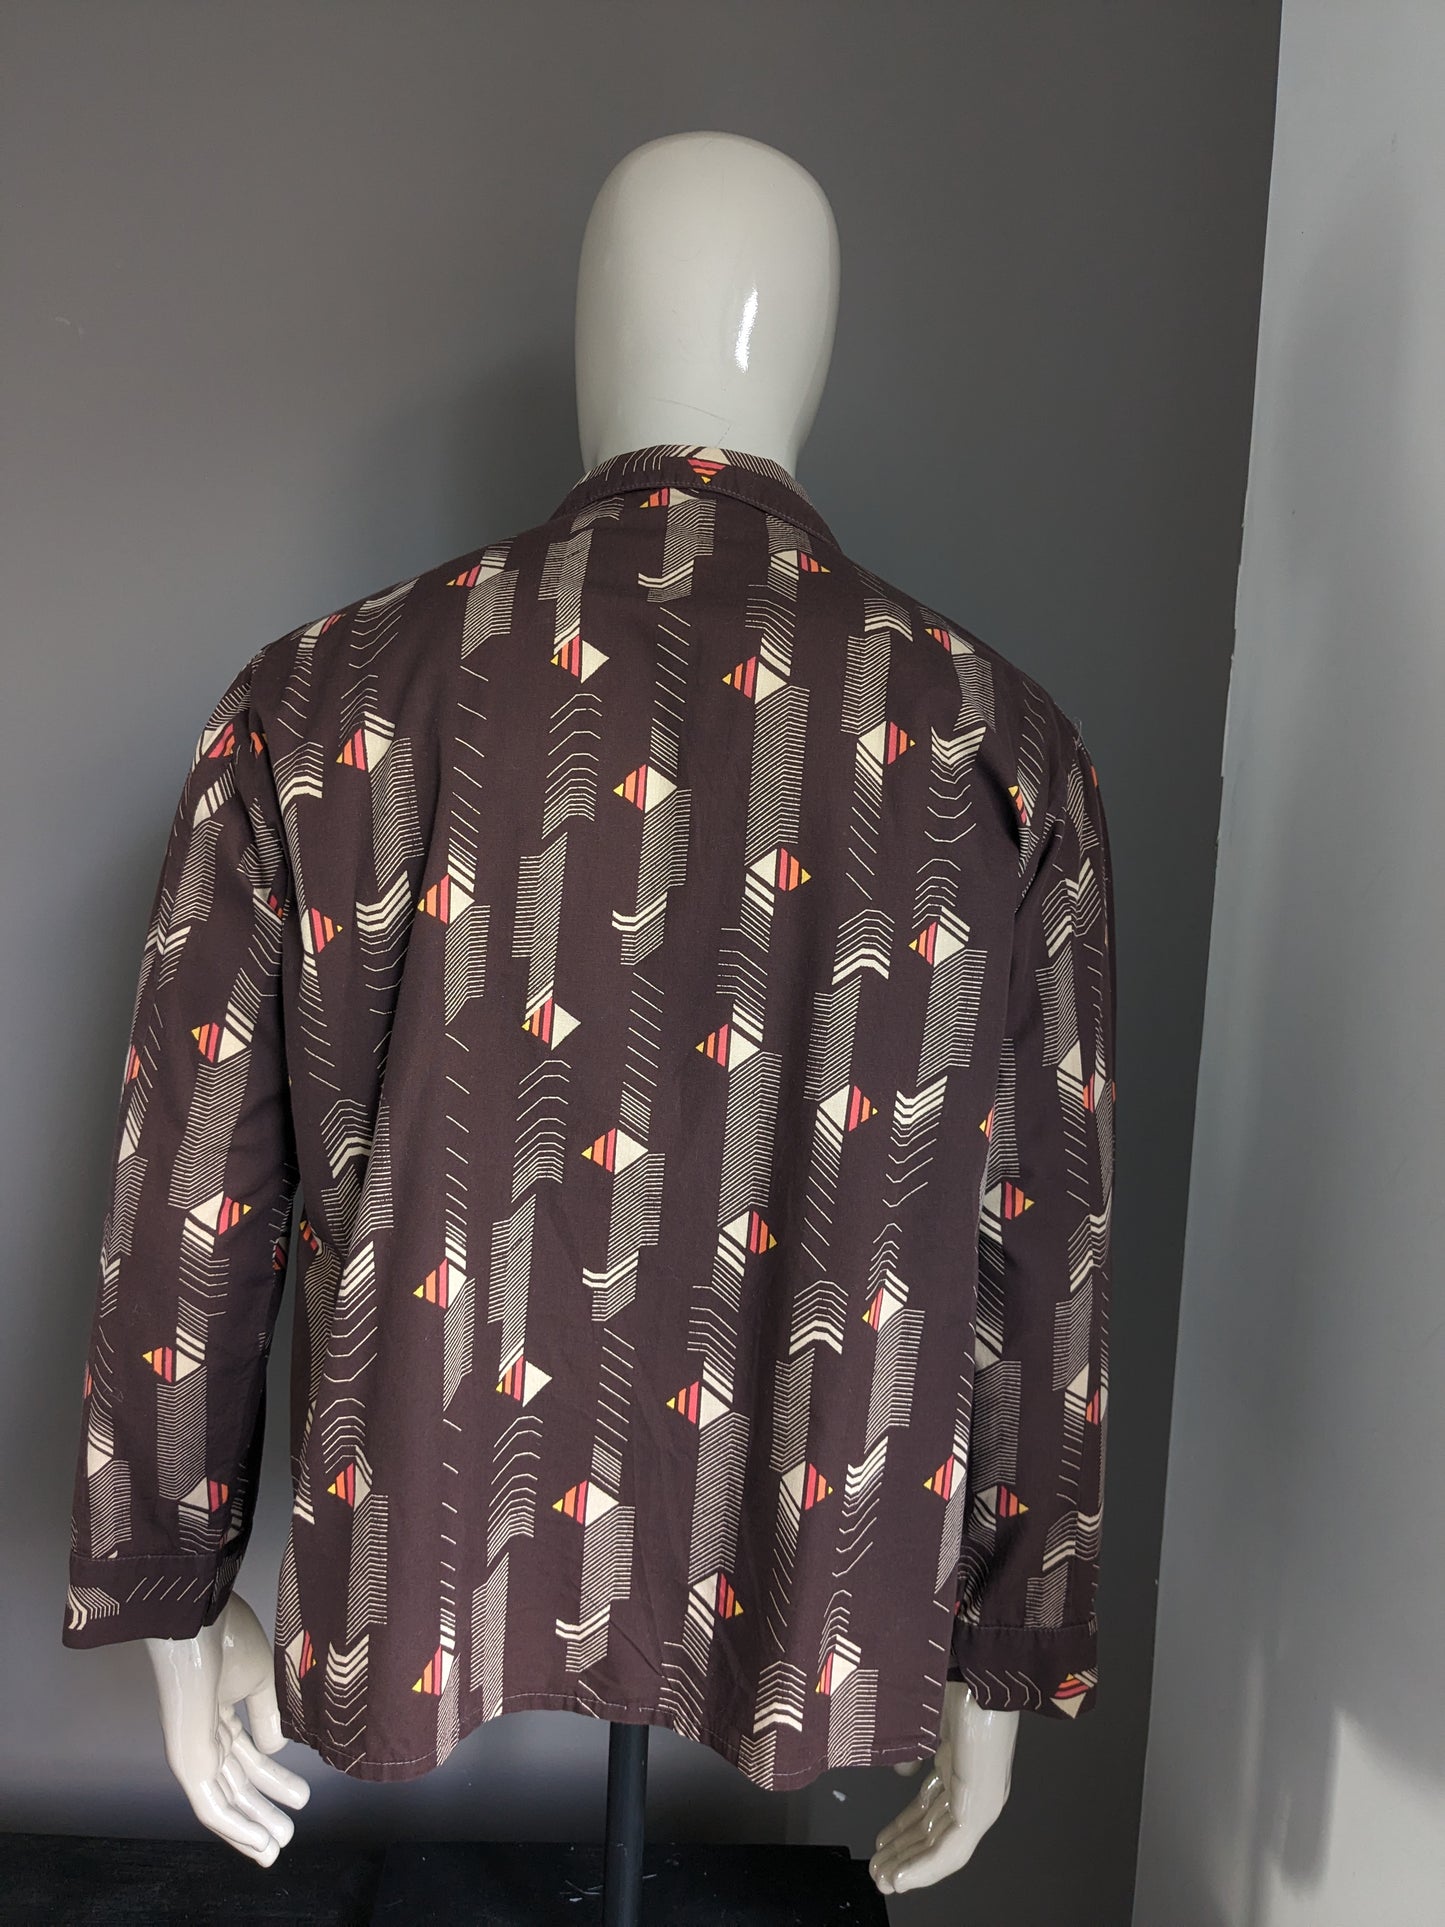 Camicia vintage Fourman degli anni '70 con colletto punti. Stampa gialla arancione rosso marrone. Dimensione 2xl / xxl.